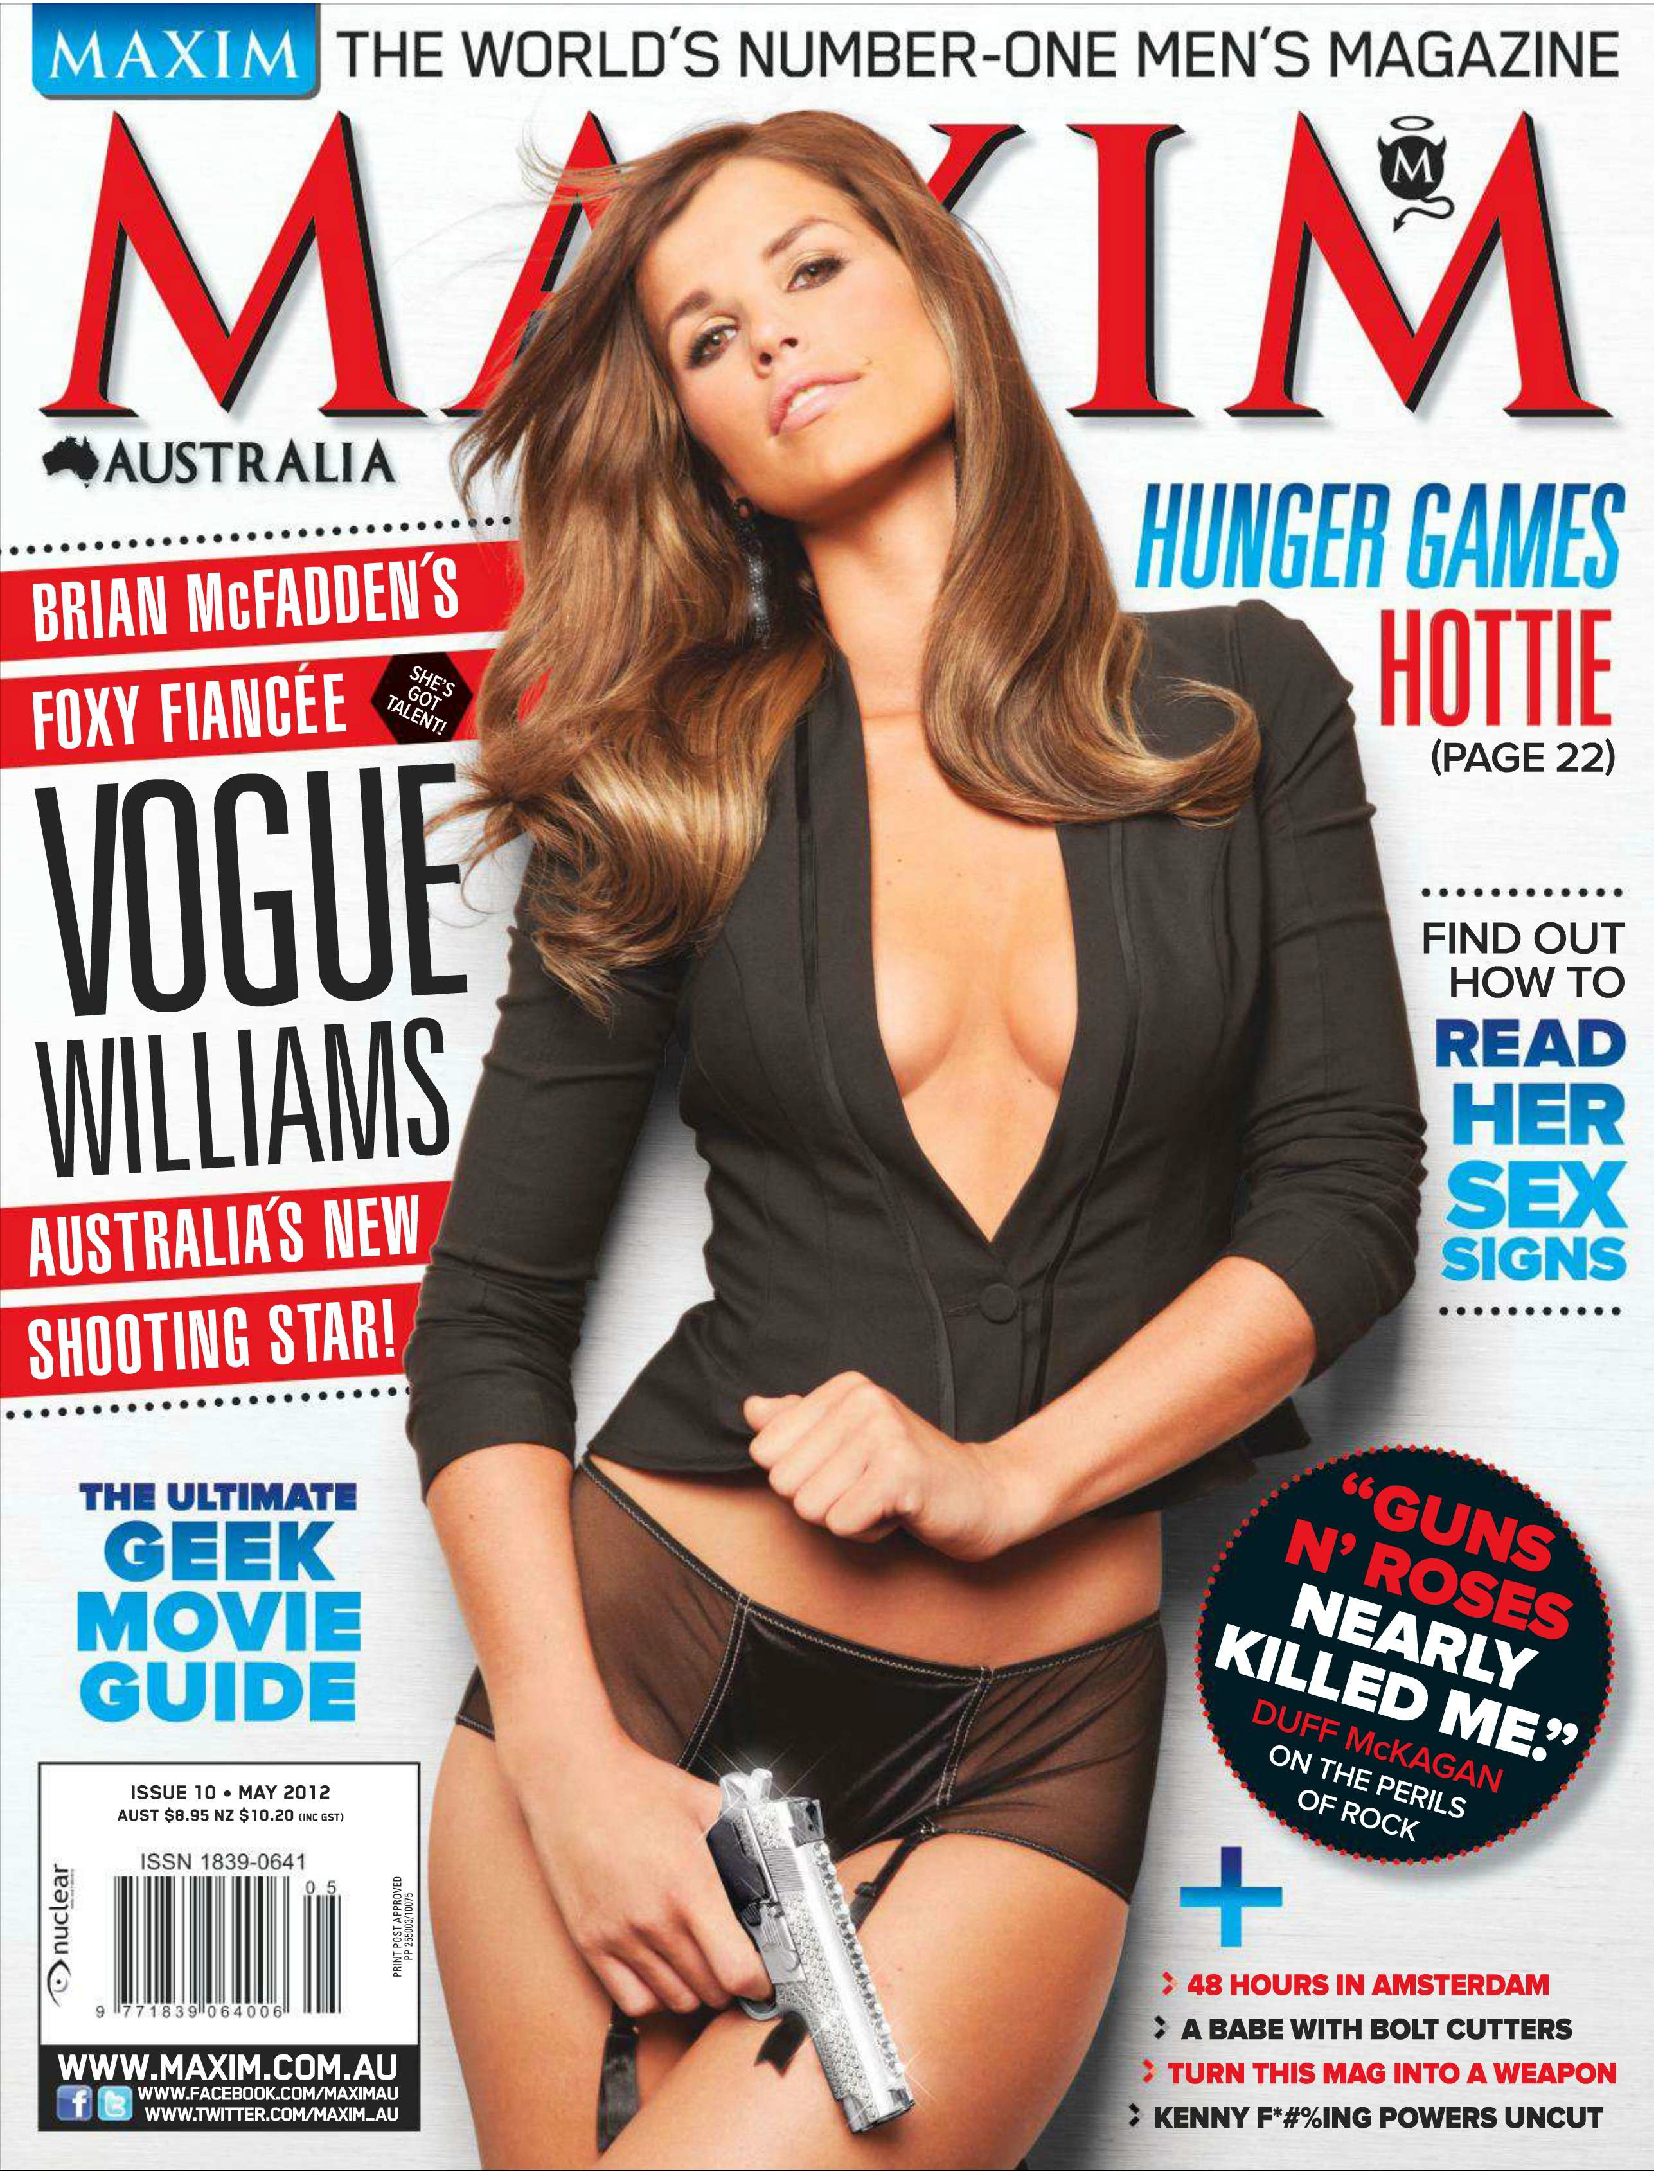 Vogue Williams in Maxim Magazine Australia